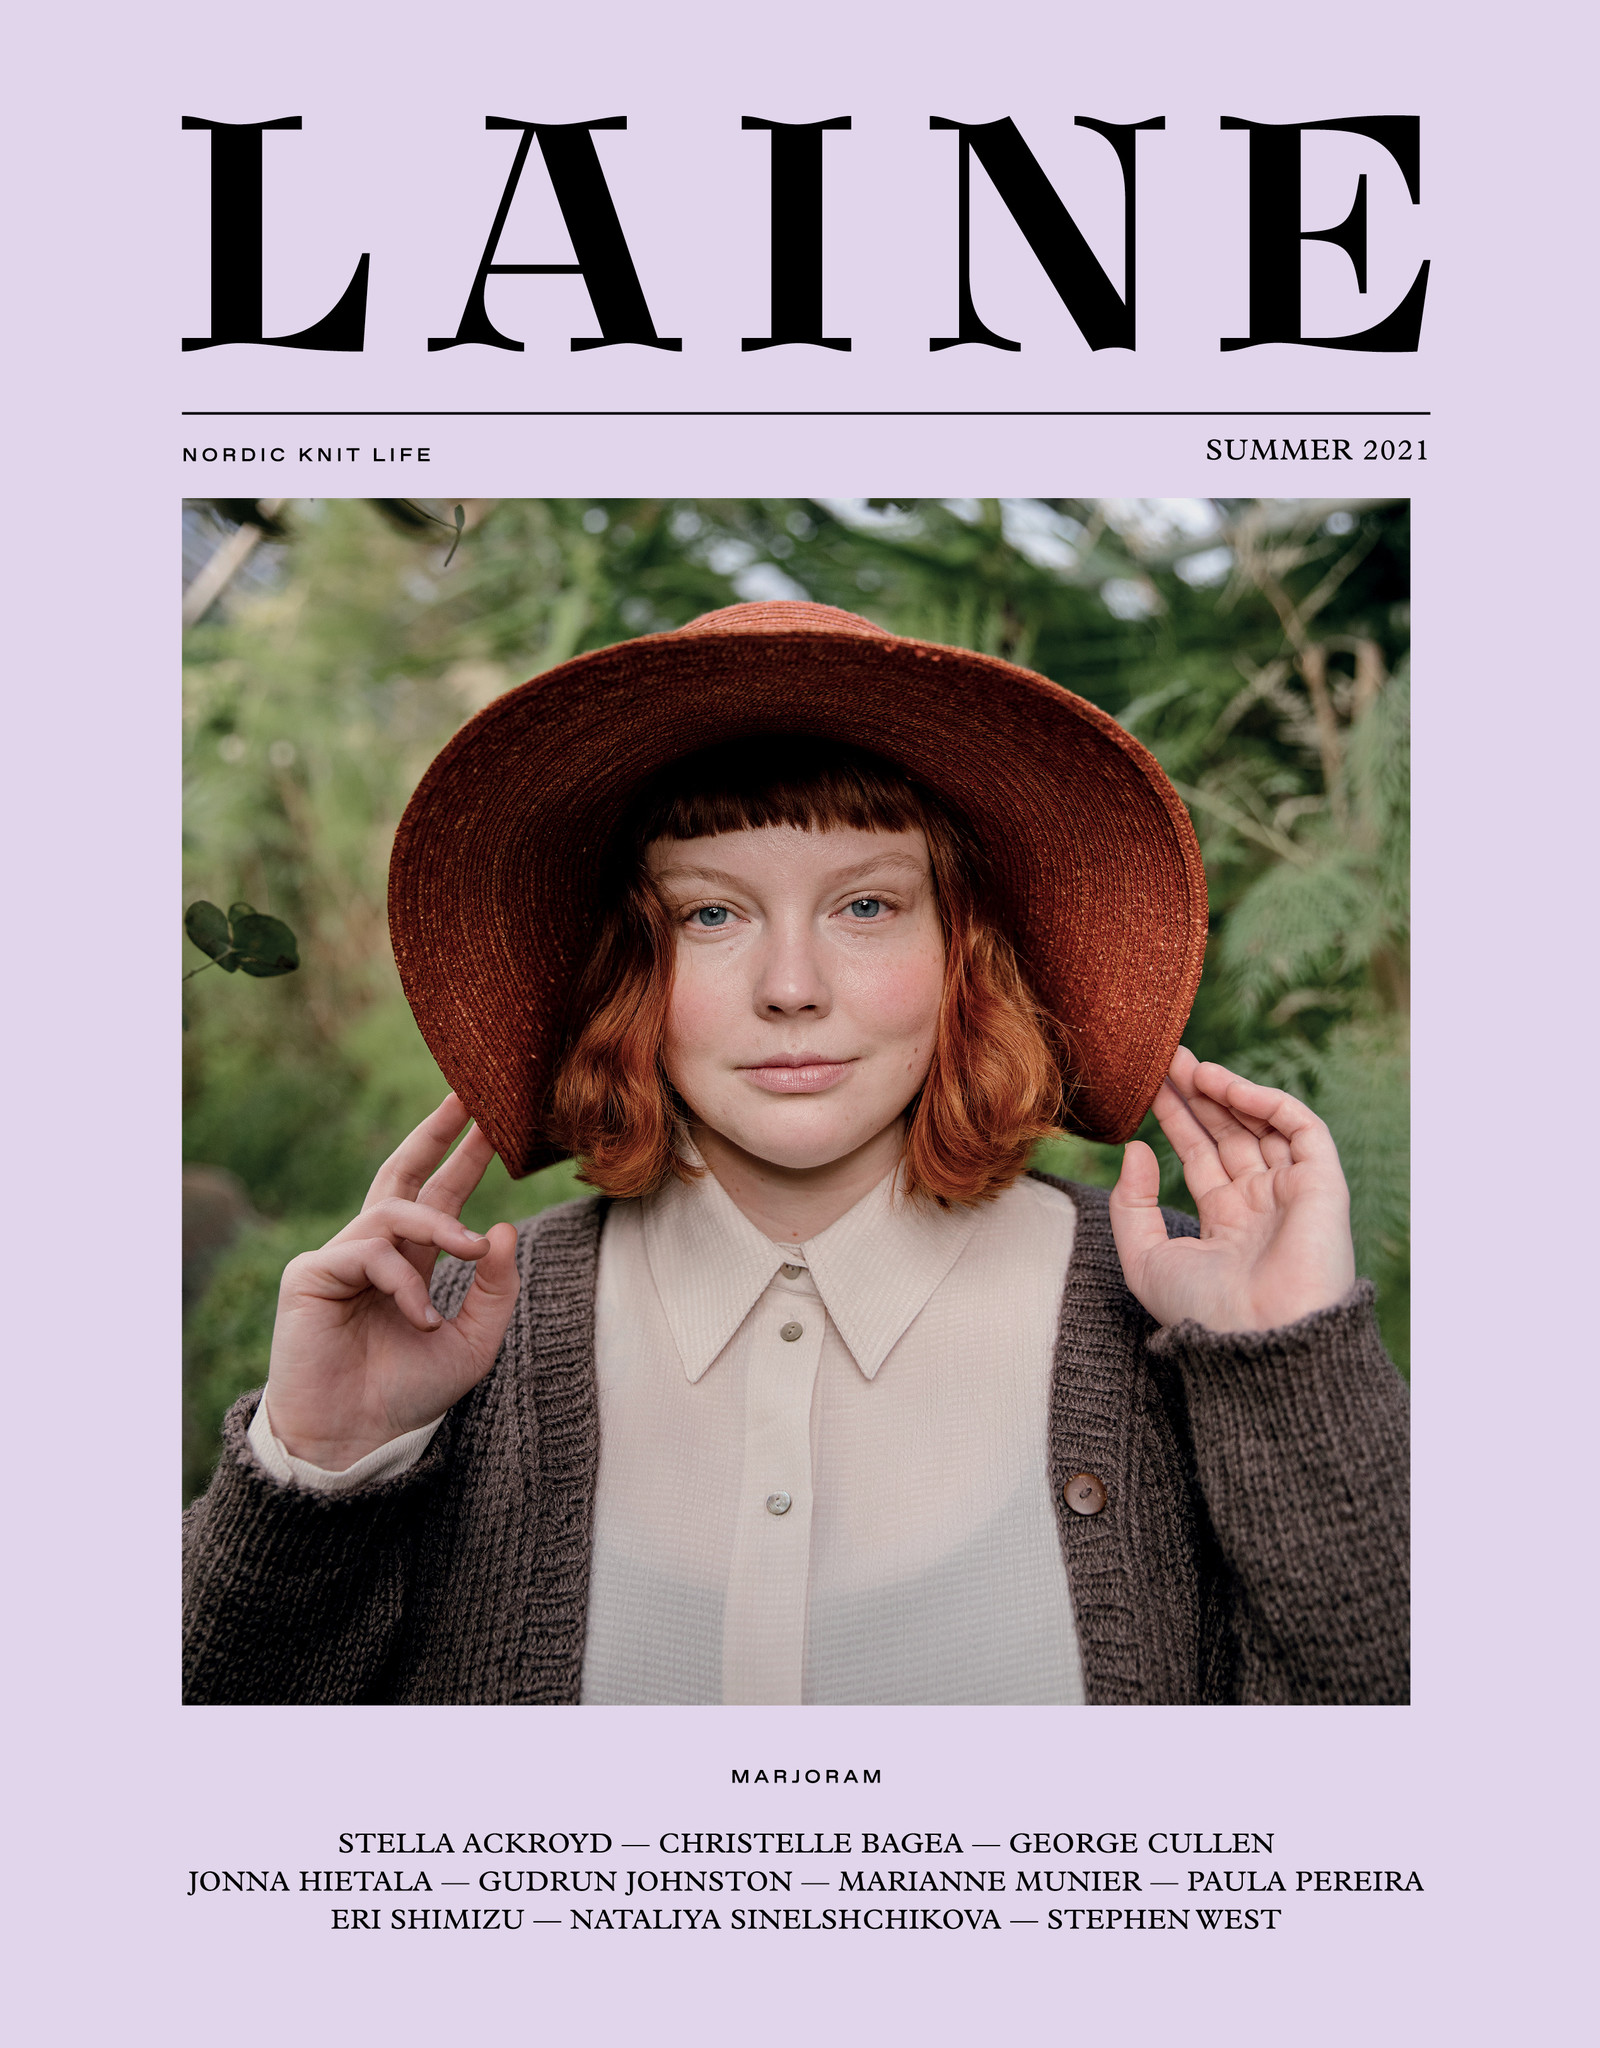 Laine Laine Magazine Issue 11 - Marjoram